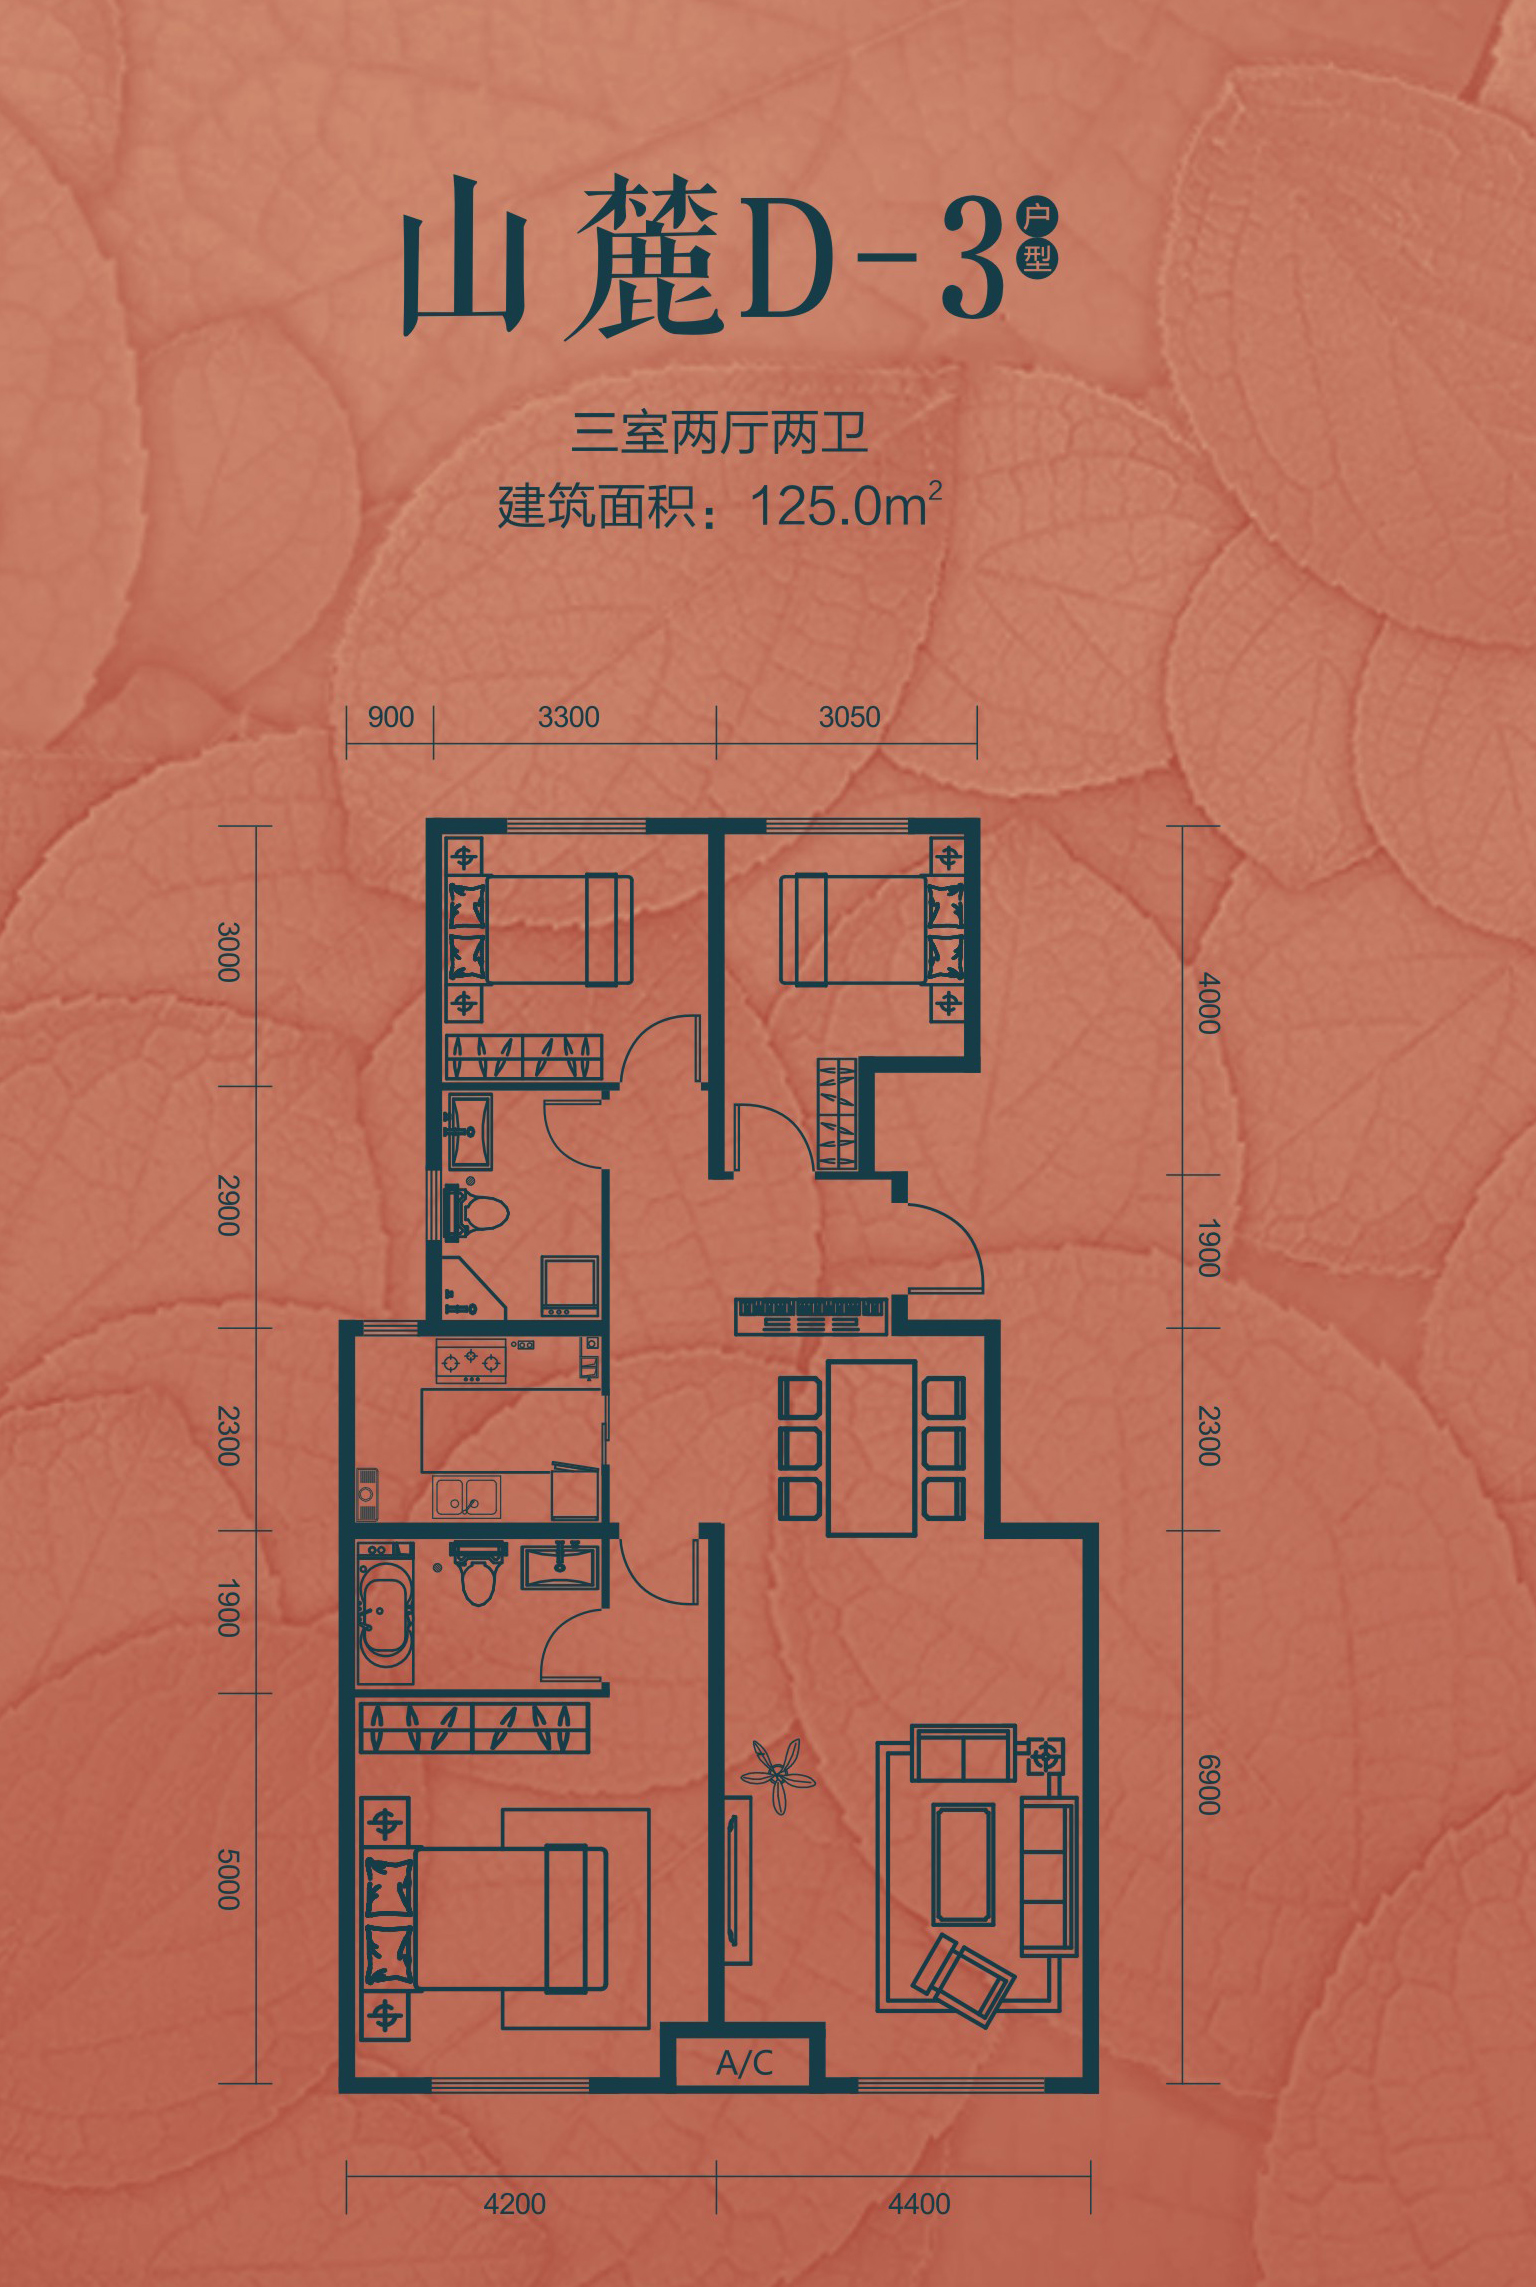 汇润城山麓d3:三室两厅两卫户型图